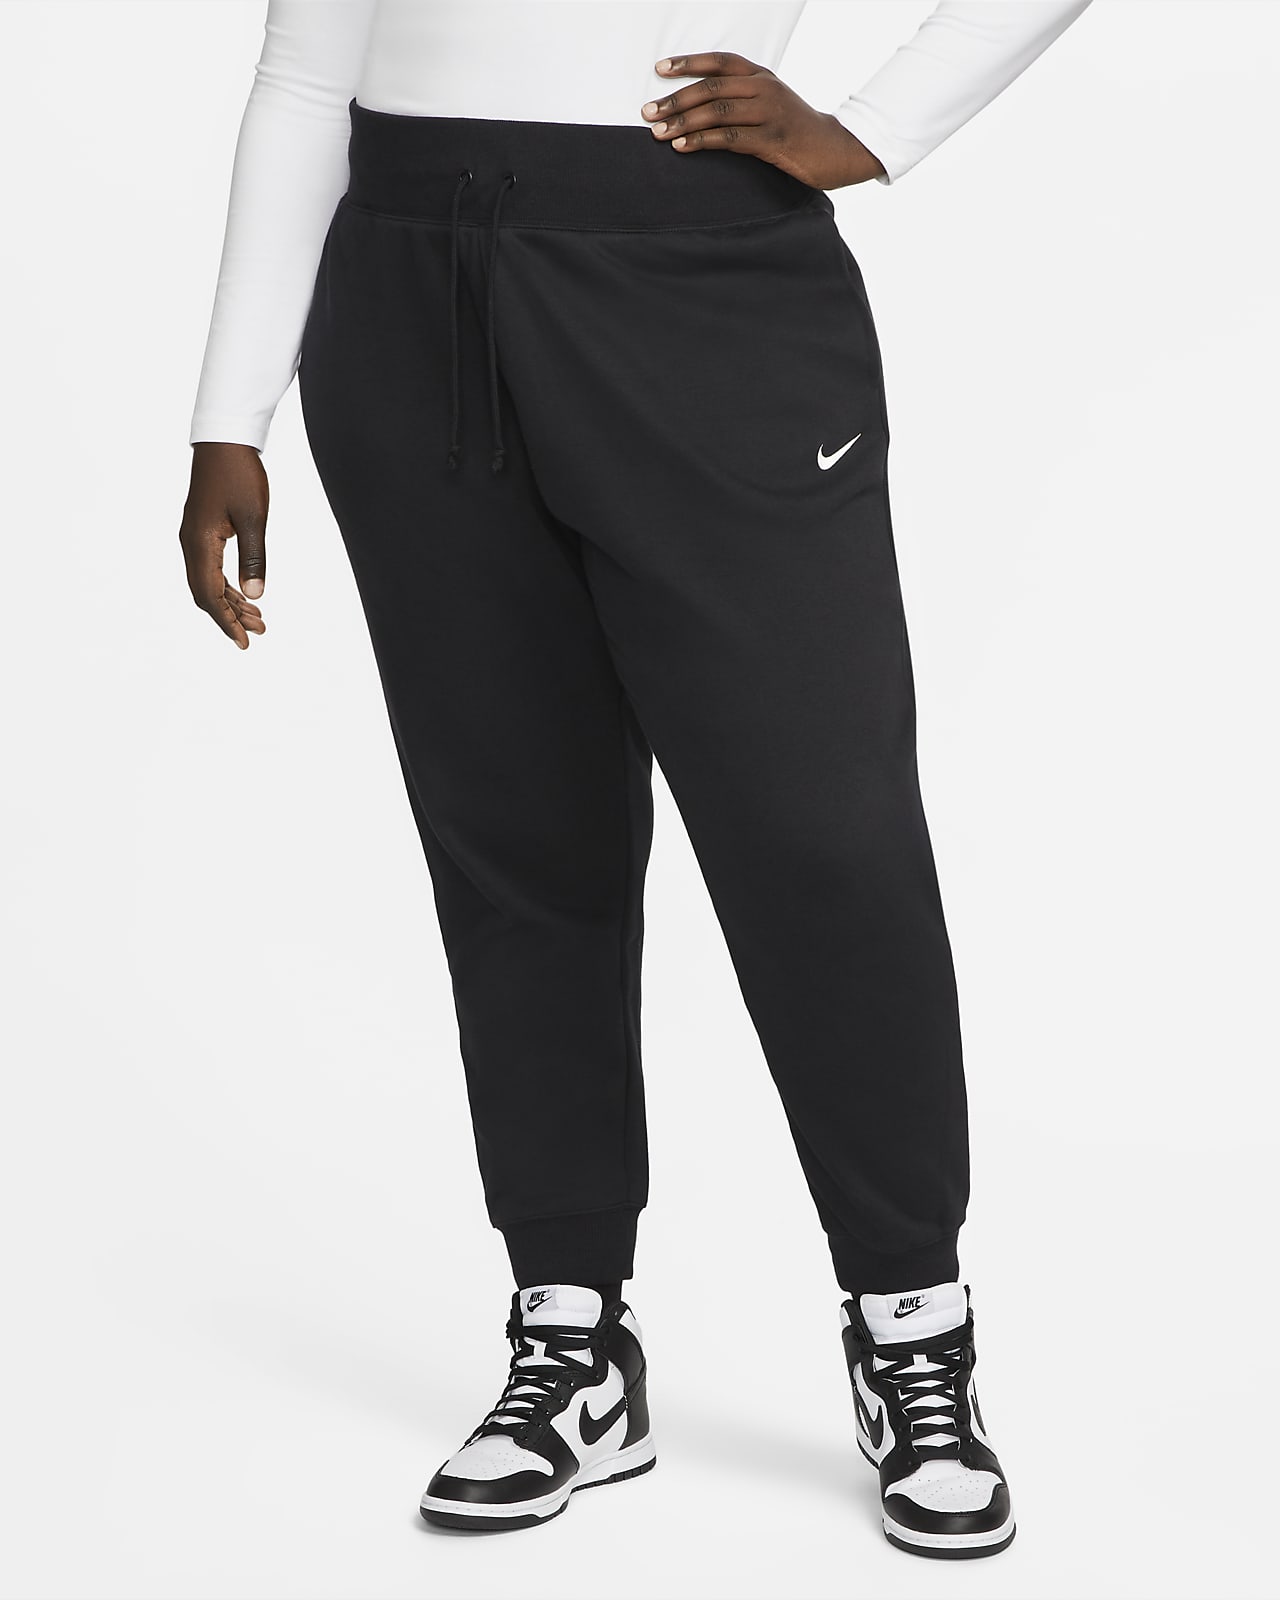 Survêtement & Ensemble Nike Homme - Size? France